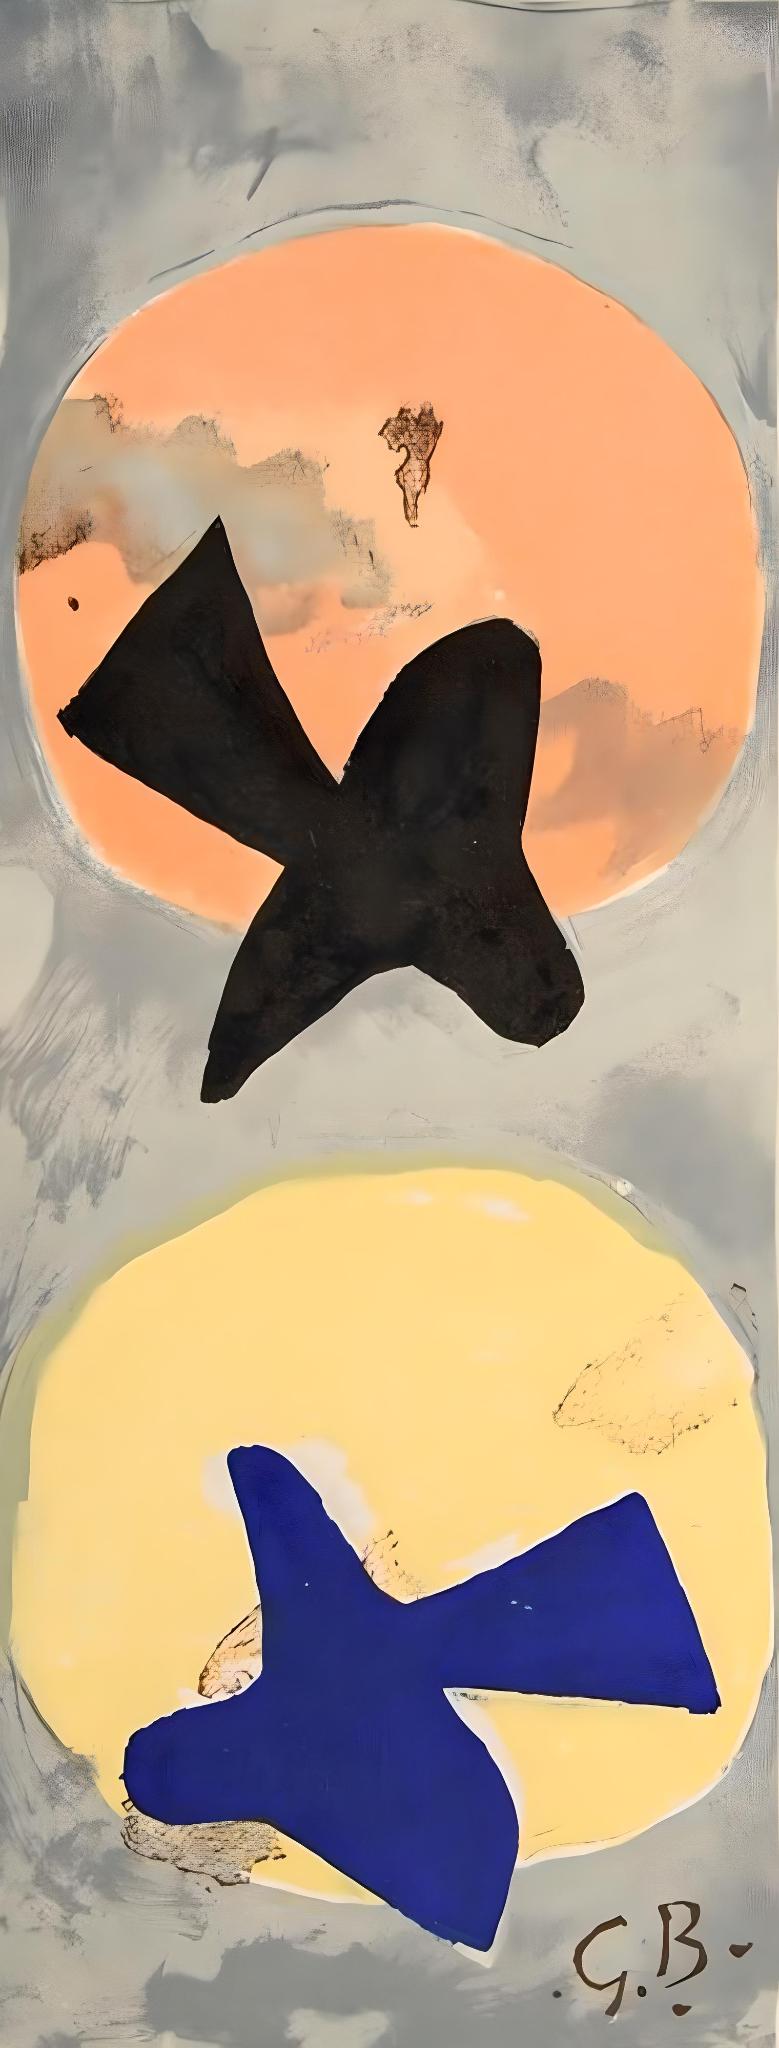 Georges Braque Abstract Print - Braque, Soleil et lune II, Derrière le miroir (after)